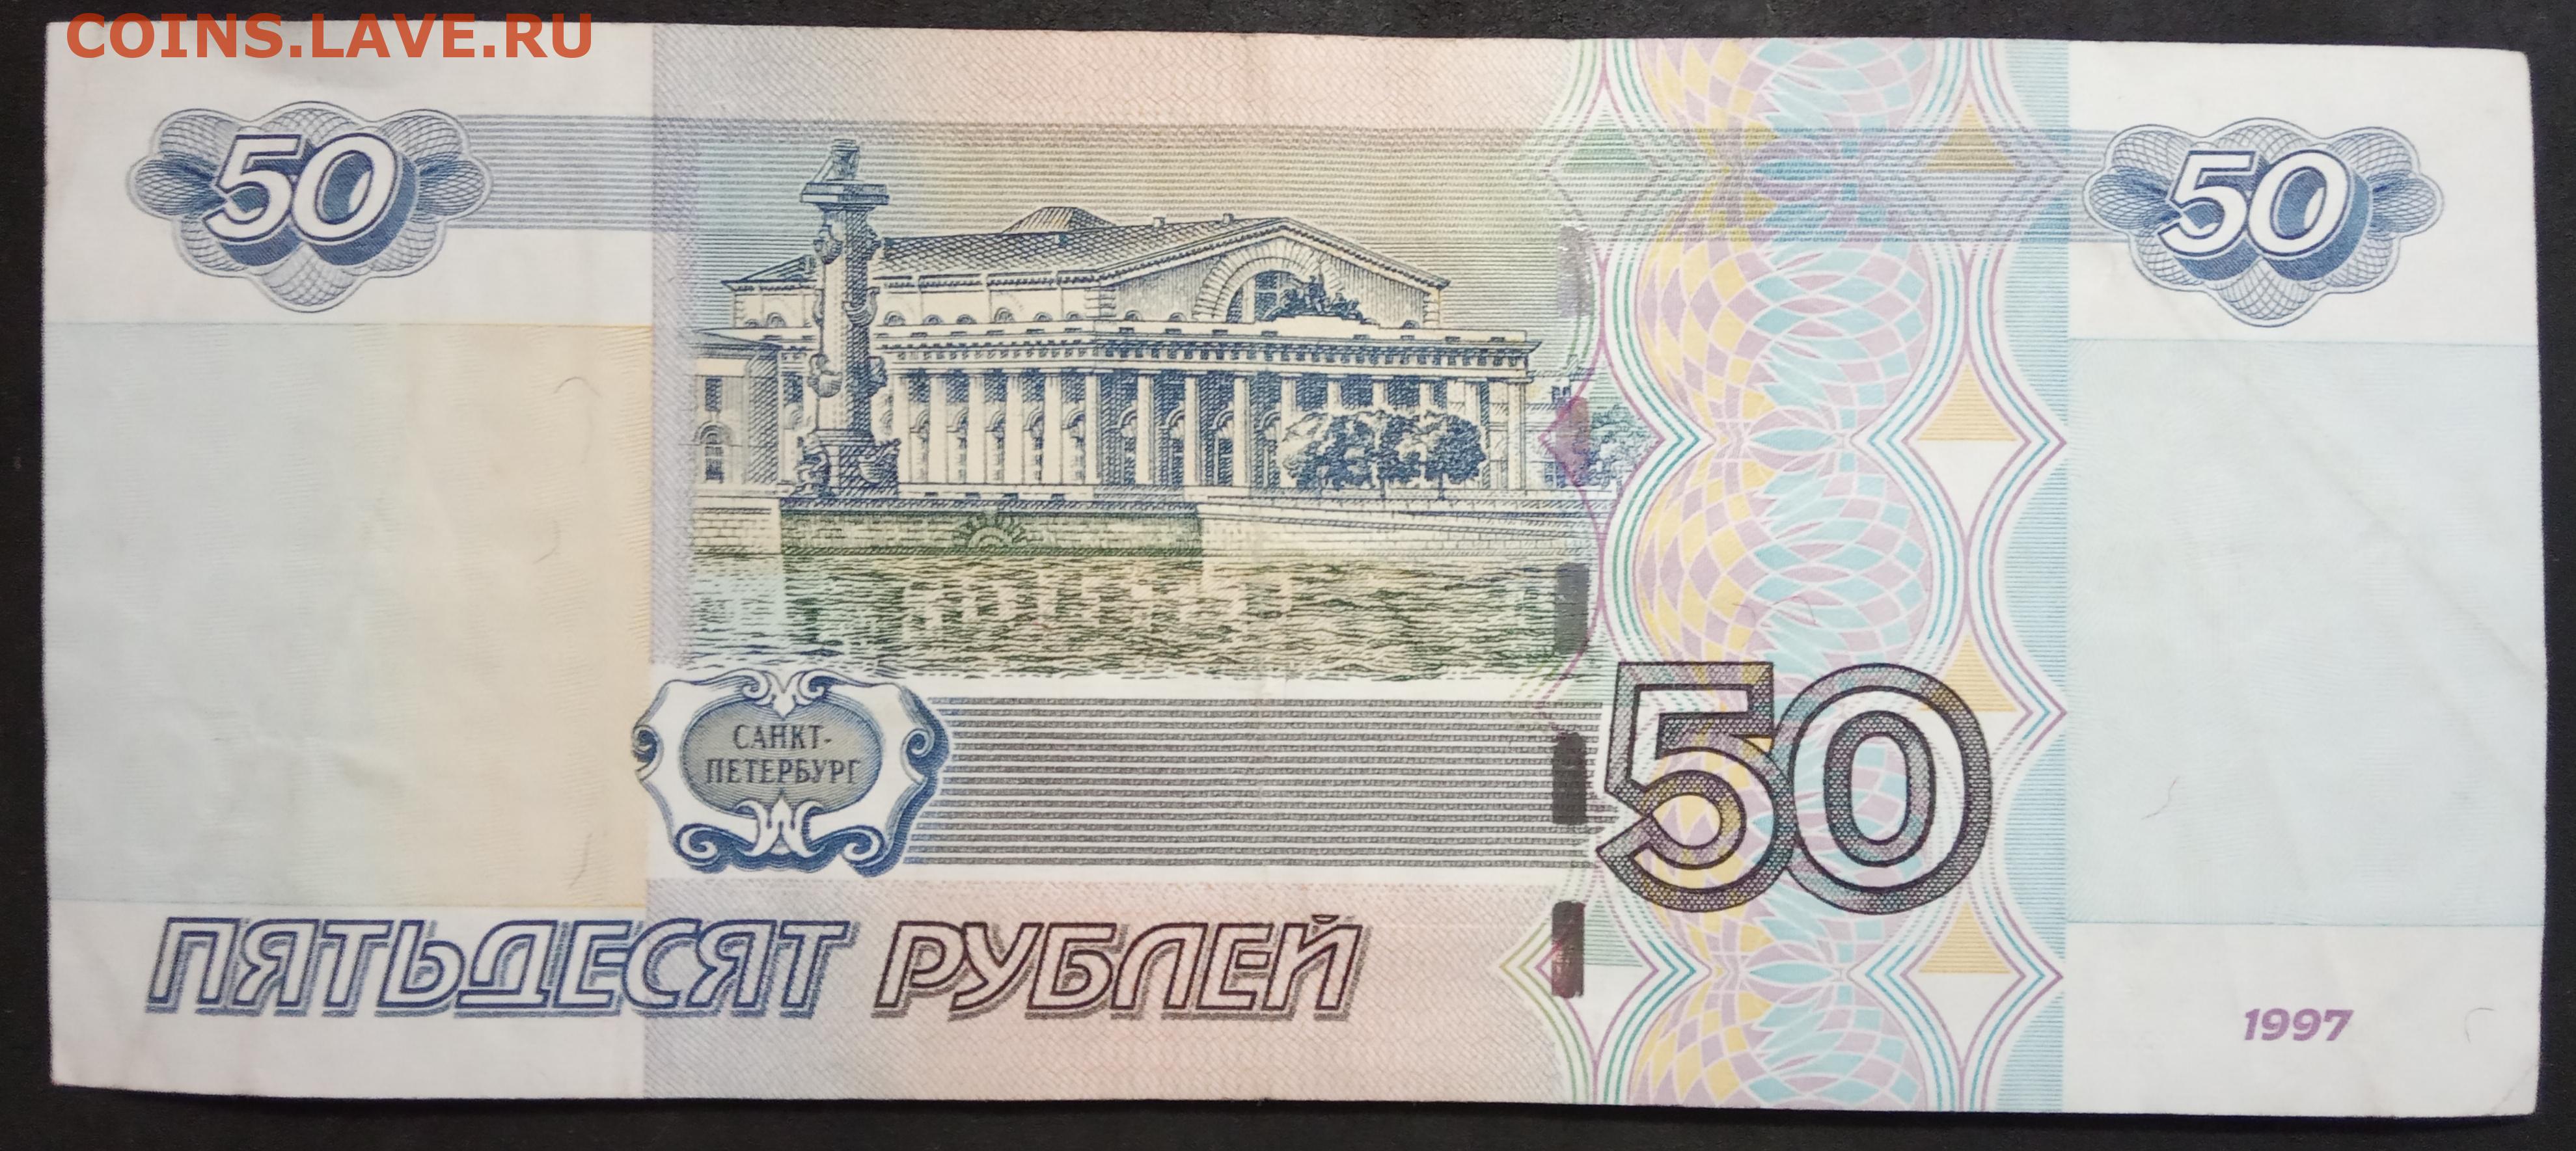 Пятьдесят р. Деньги 50 рублей. Купюра 50 р. Купюра 50 рублей. Банкнота 50 рублей.